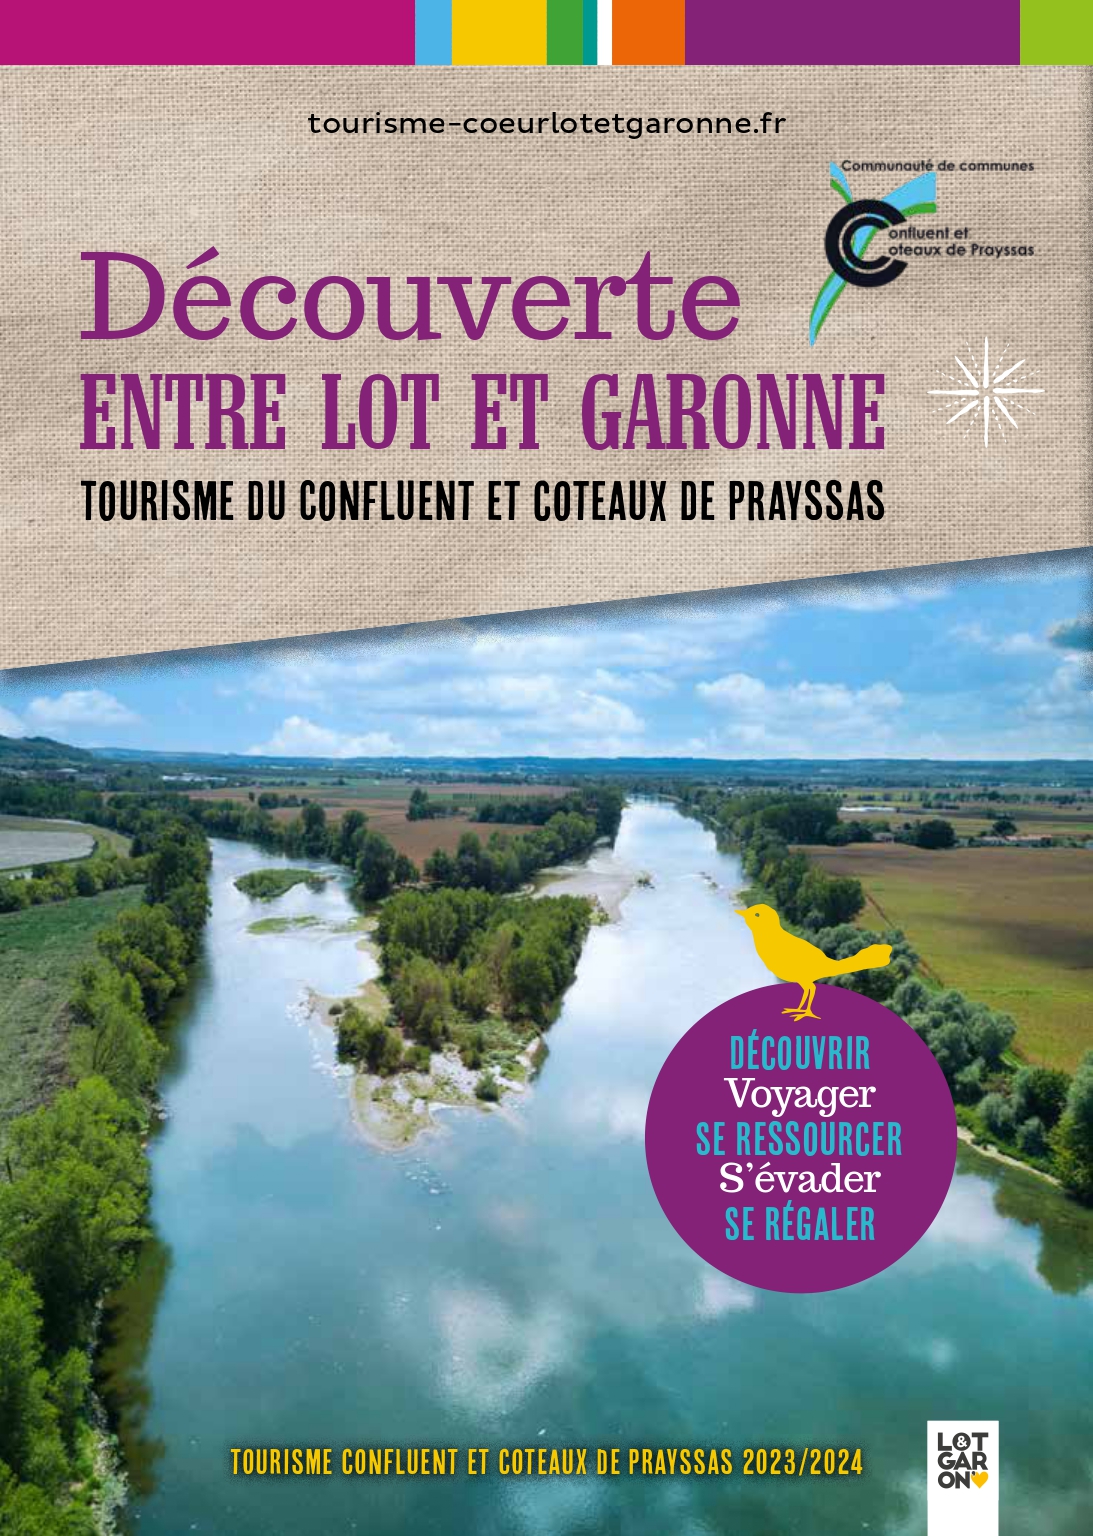 Visiter Le Lot et Garonne, Vacances En Lot et Garonne- Tourisme